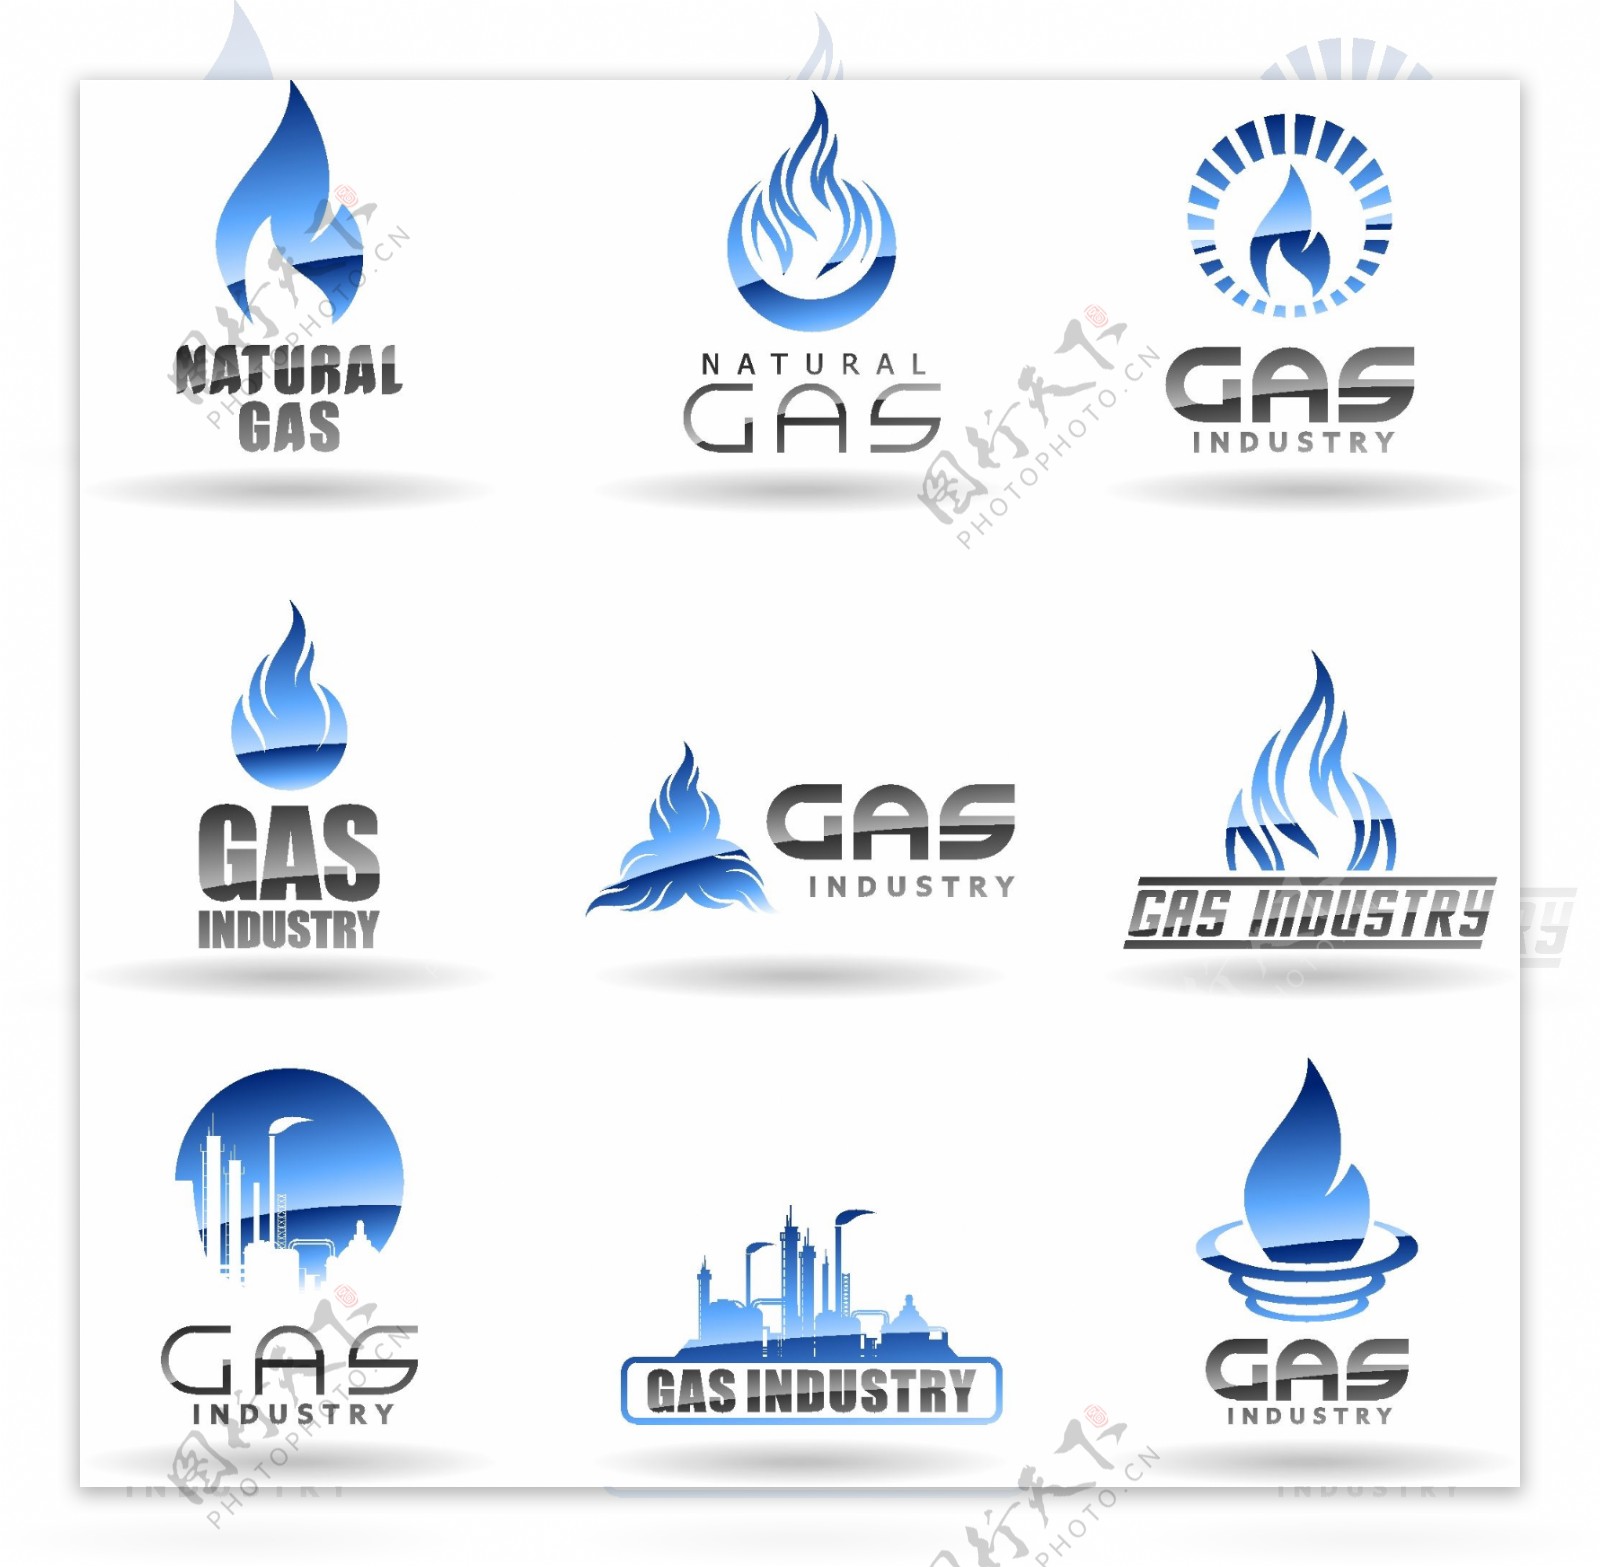 天然气公司标志矢量设计